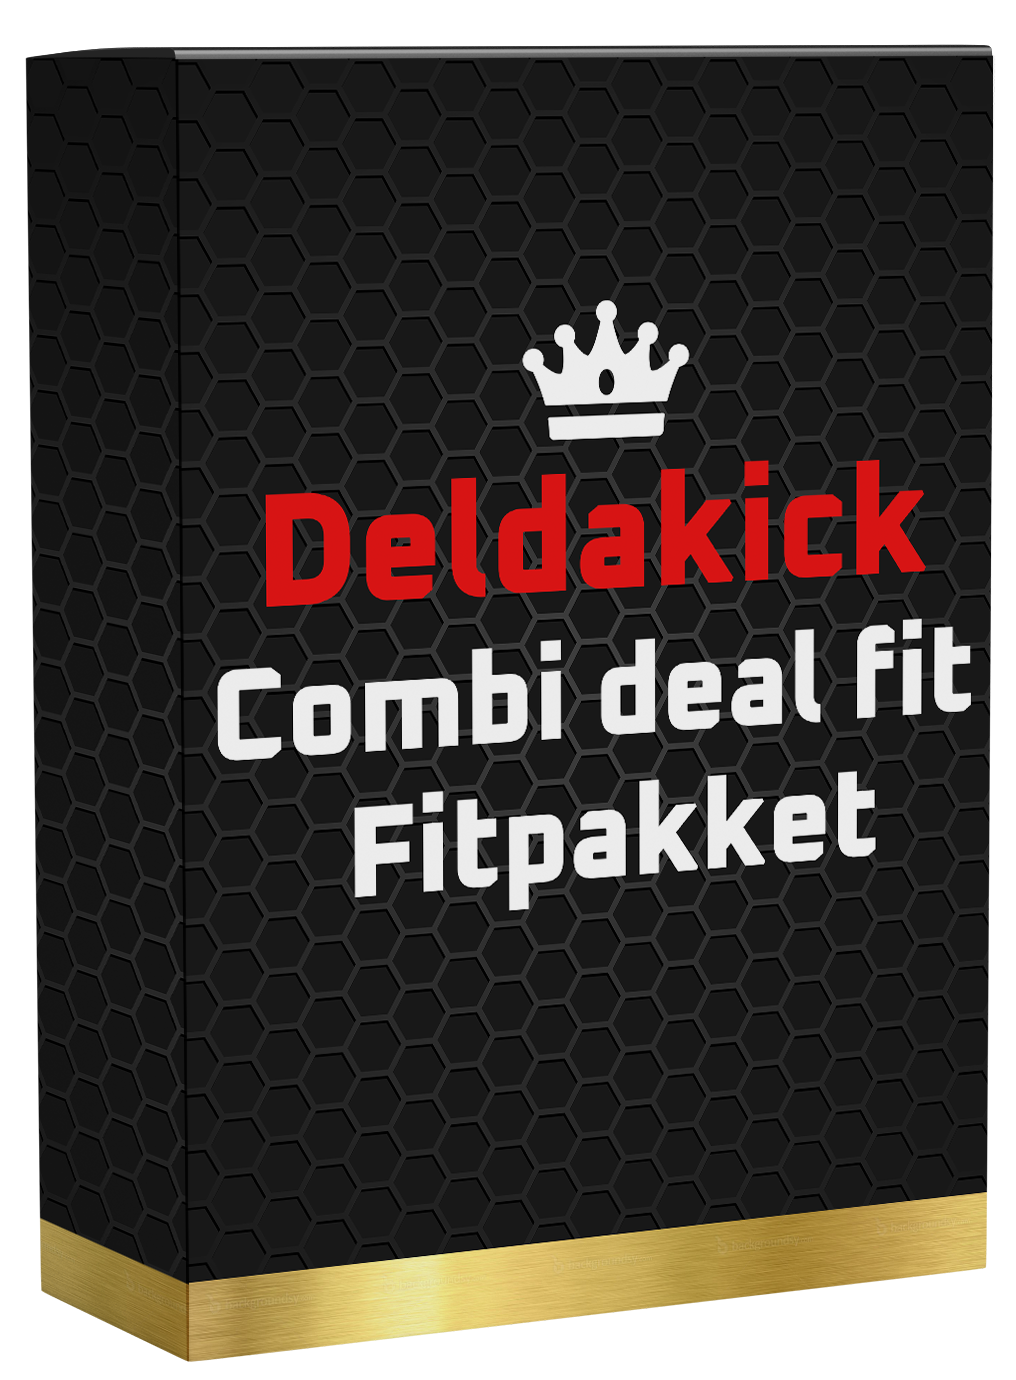 Deldakick Combi deal fitpakket